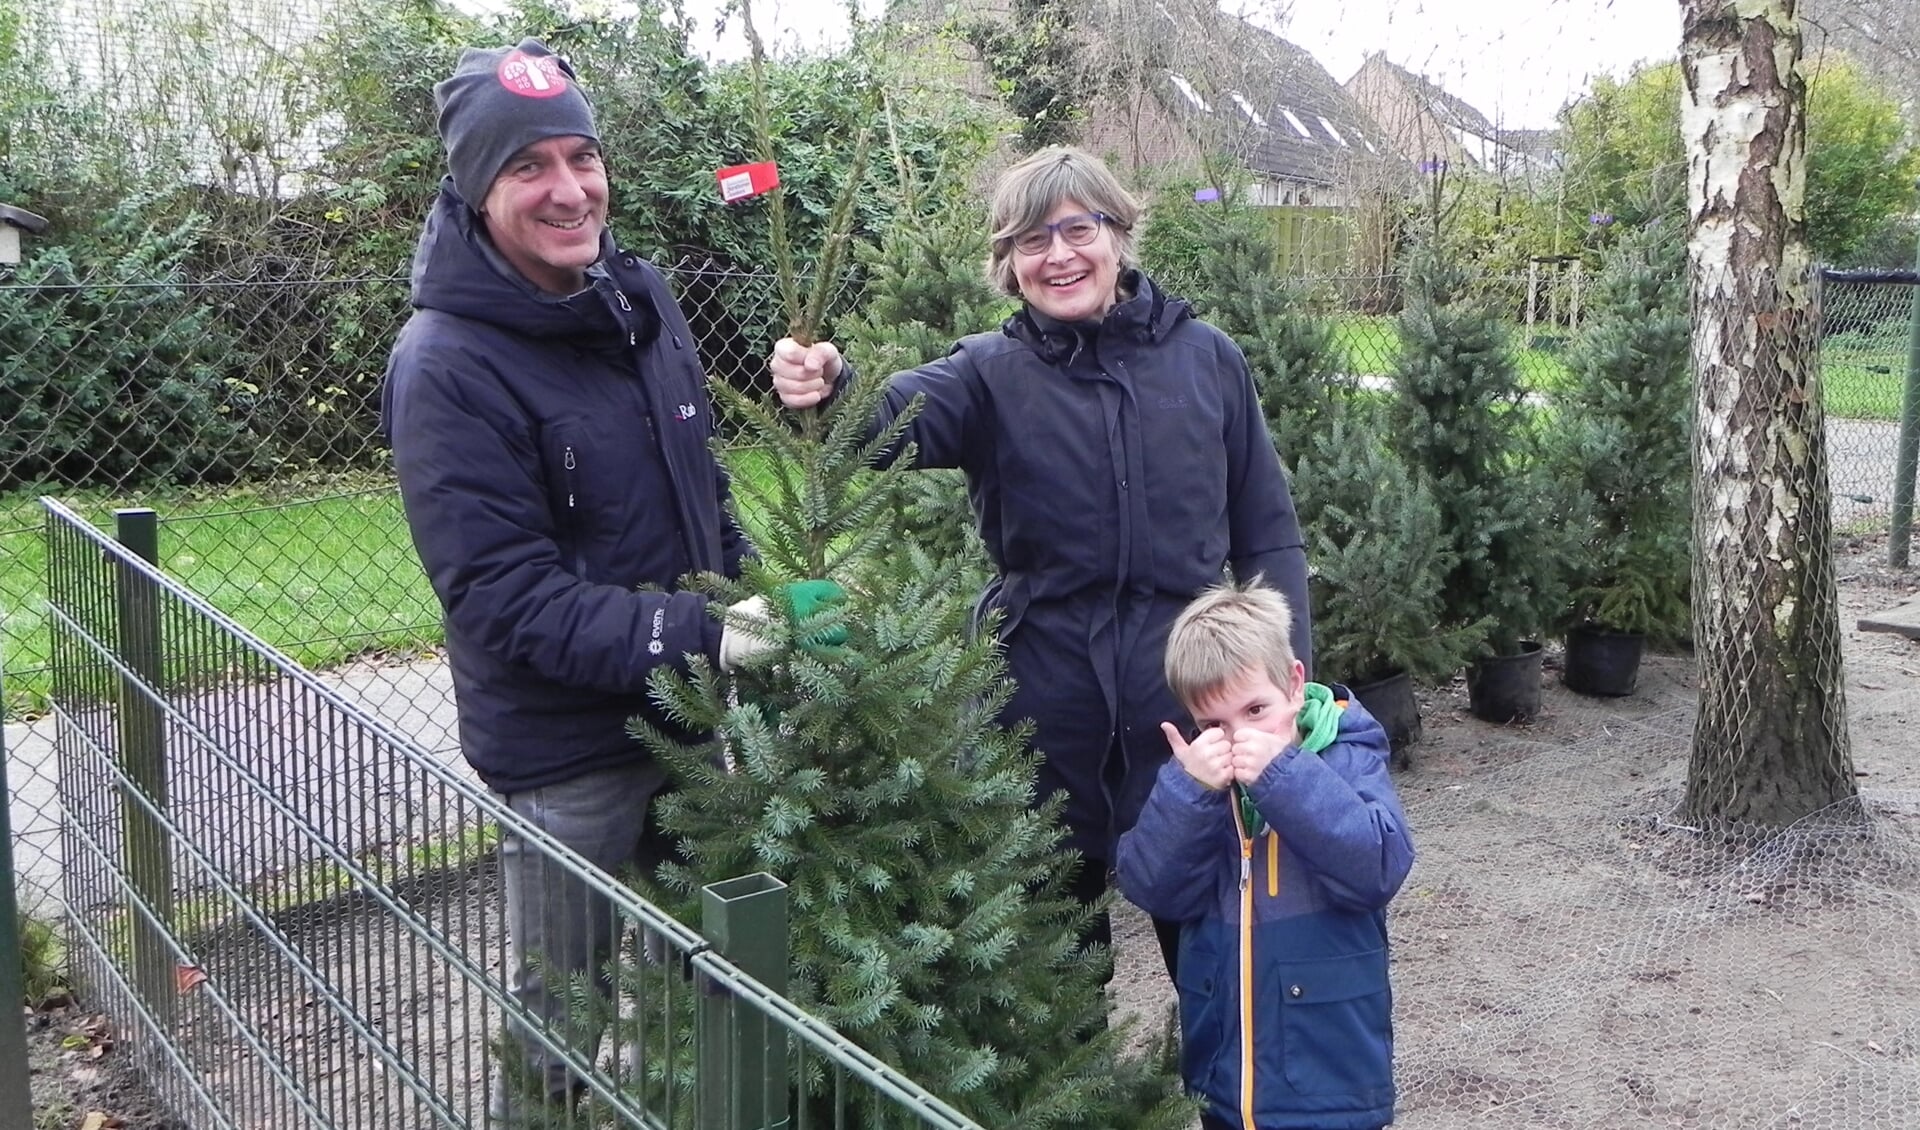 Janet Feenstra en Arjan Veldsink verzorgen de distributie van duurzame kerstbomen. Jelmer vindt het een goed initiatief.